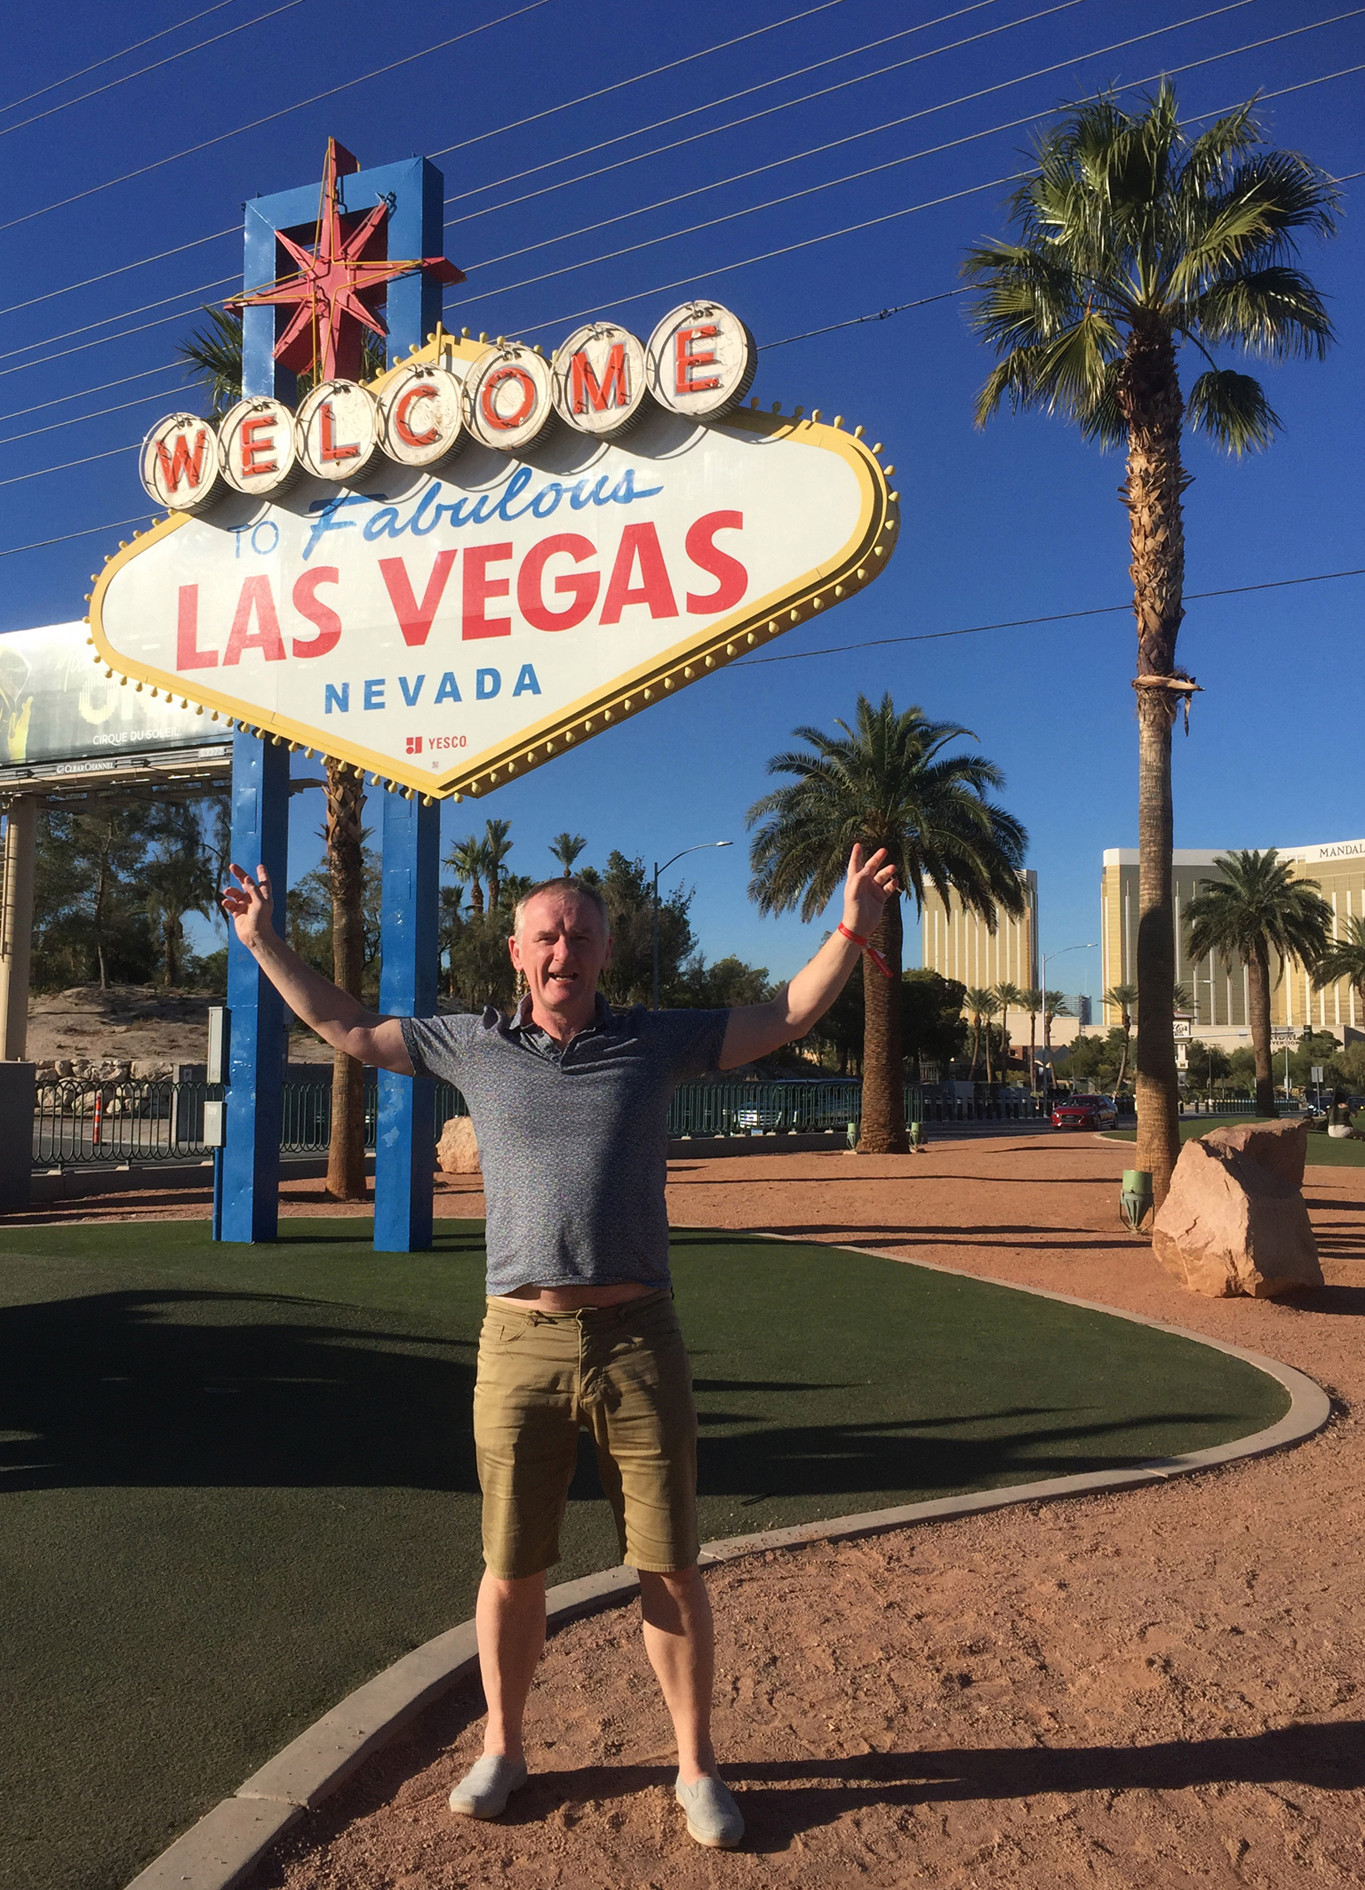  John saw the sights in Vegas